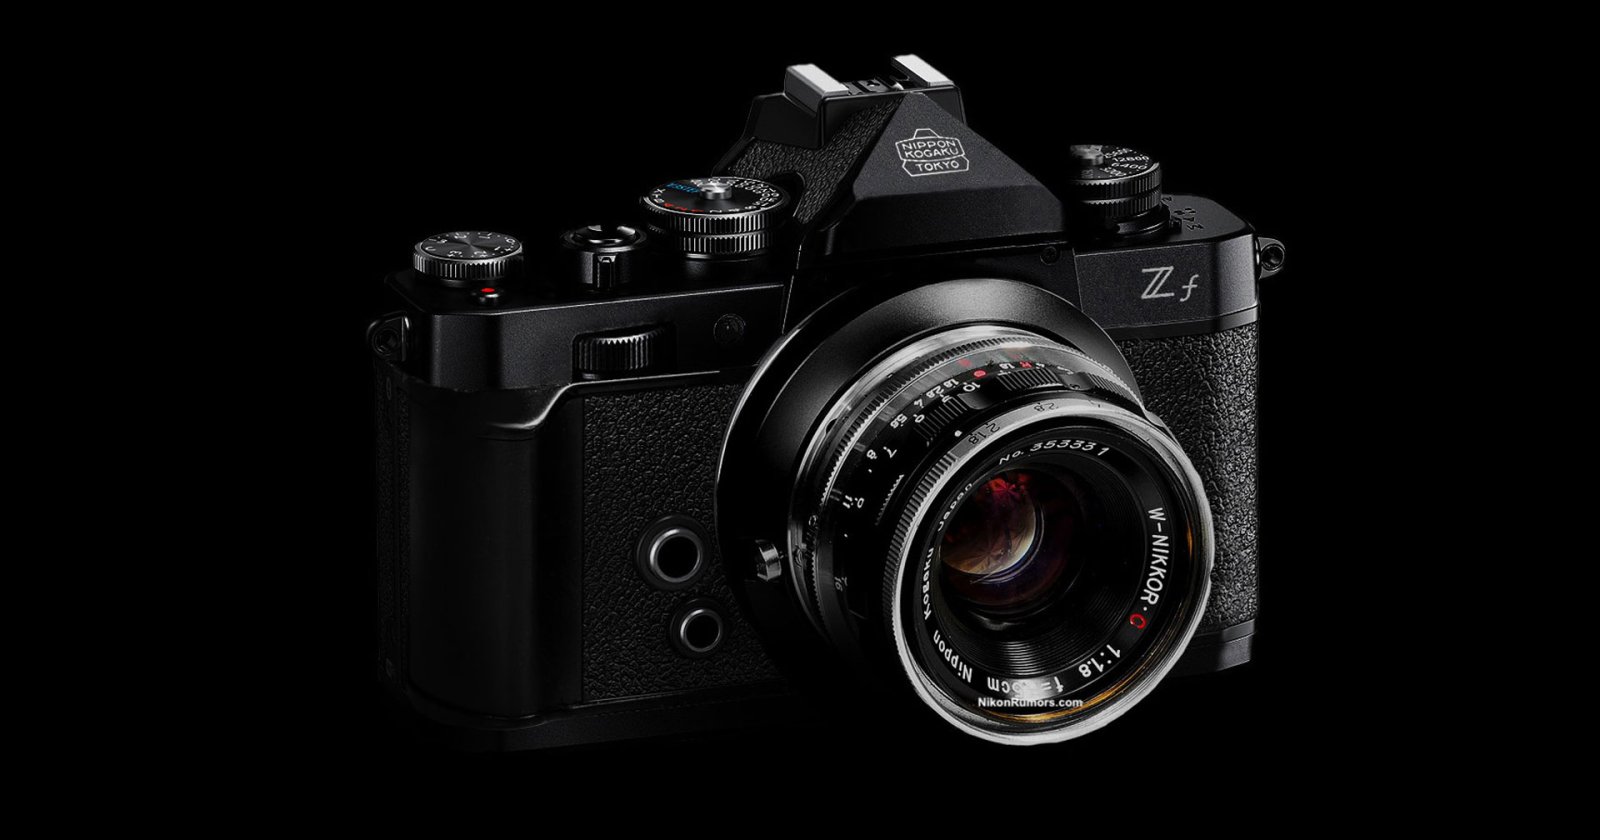 อัปเดตข่าวลือ Nikon Zf อาจมาพร้อมกับเซนเซอร์ฟูลเฟรมรุ่นใหม่ 25 ล้านพิกเซล